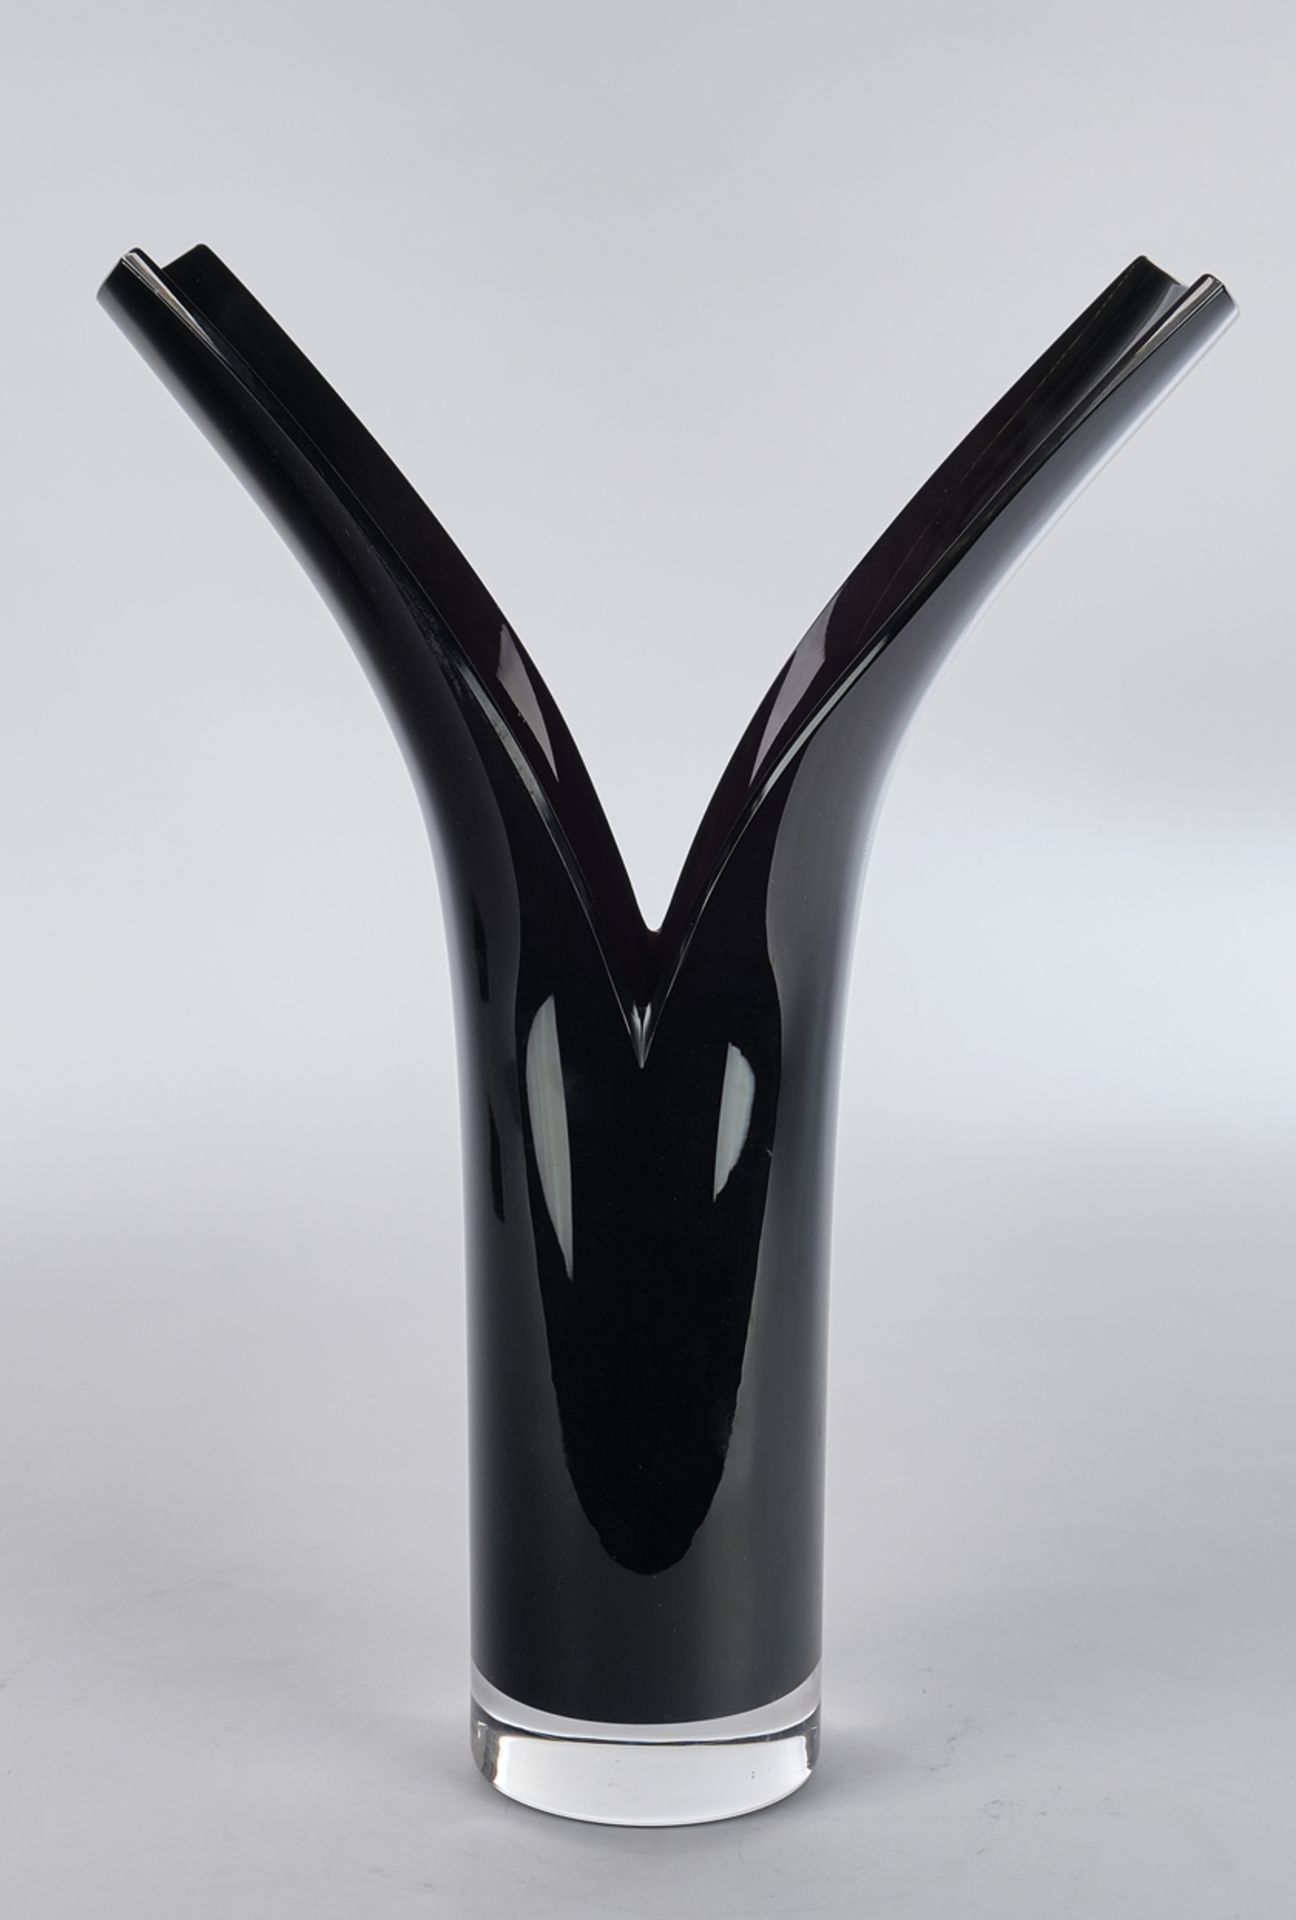 Bergström, Lena, Orrefors, Vase, Studioglas, limitierte Auflage 30, aufgespaltene Zylinderform, Kri - Bild 2 aus 4